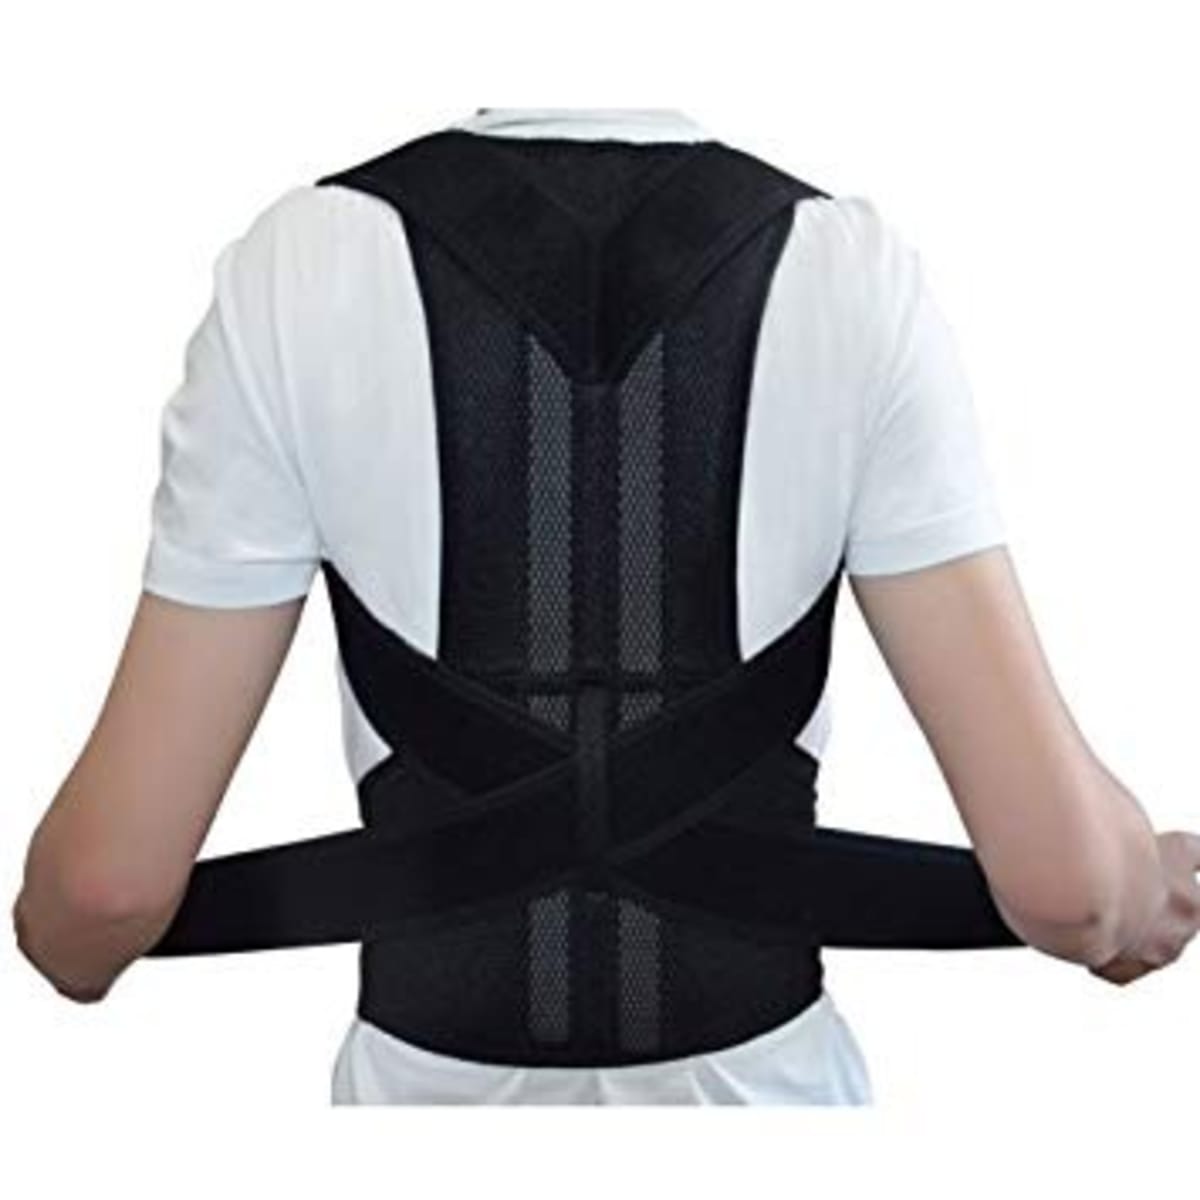 Adjustable Posture Corrector Back Brace Support Belt - Black